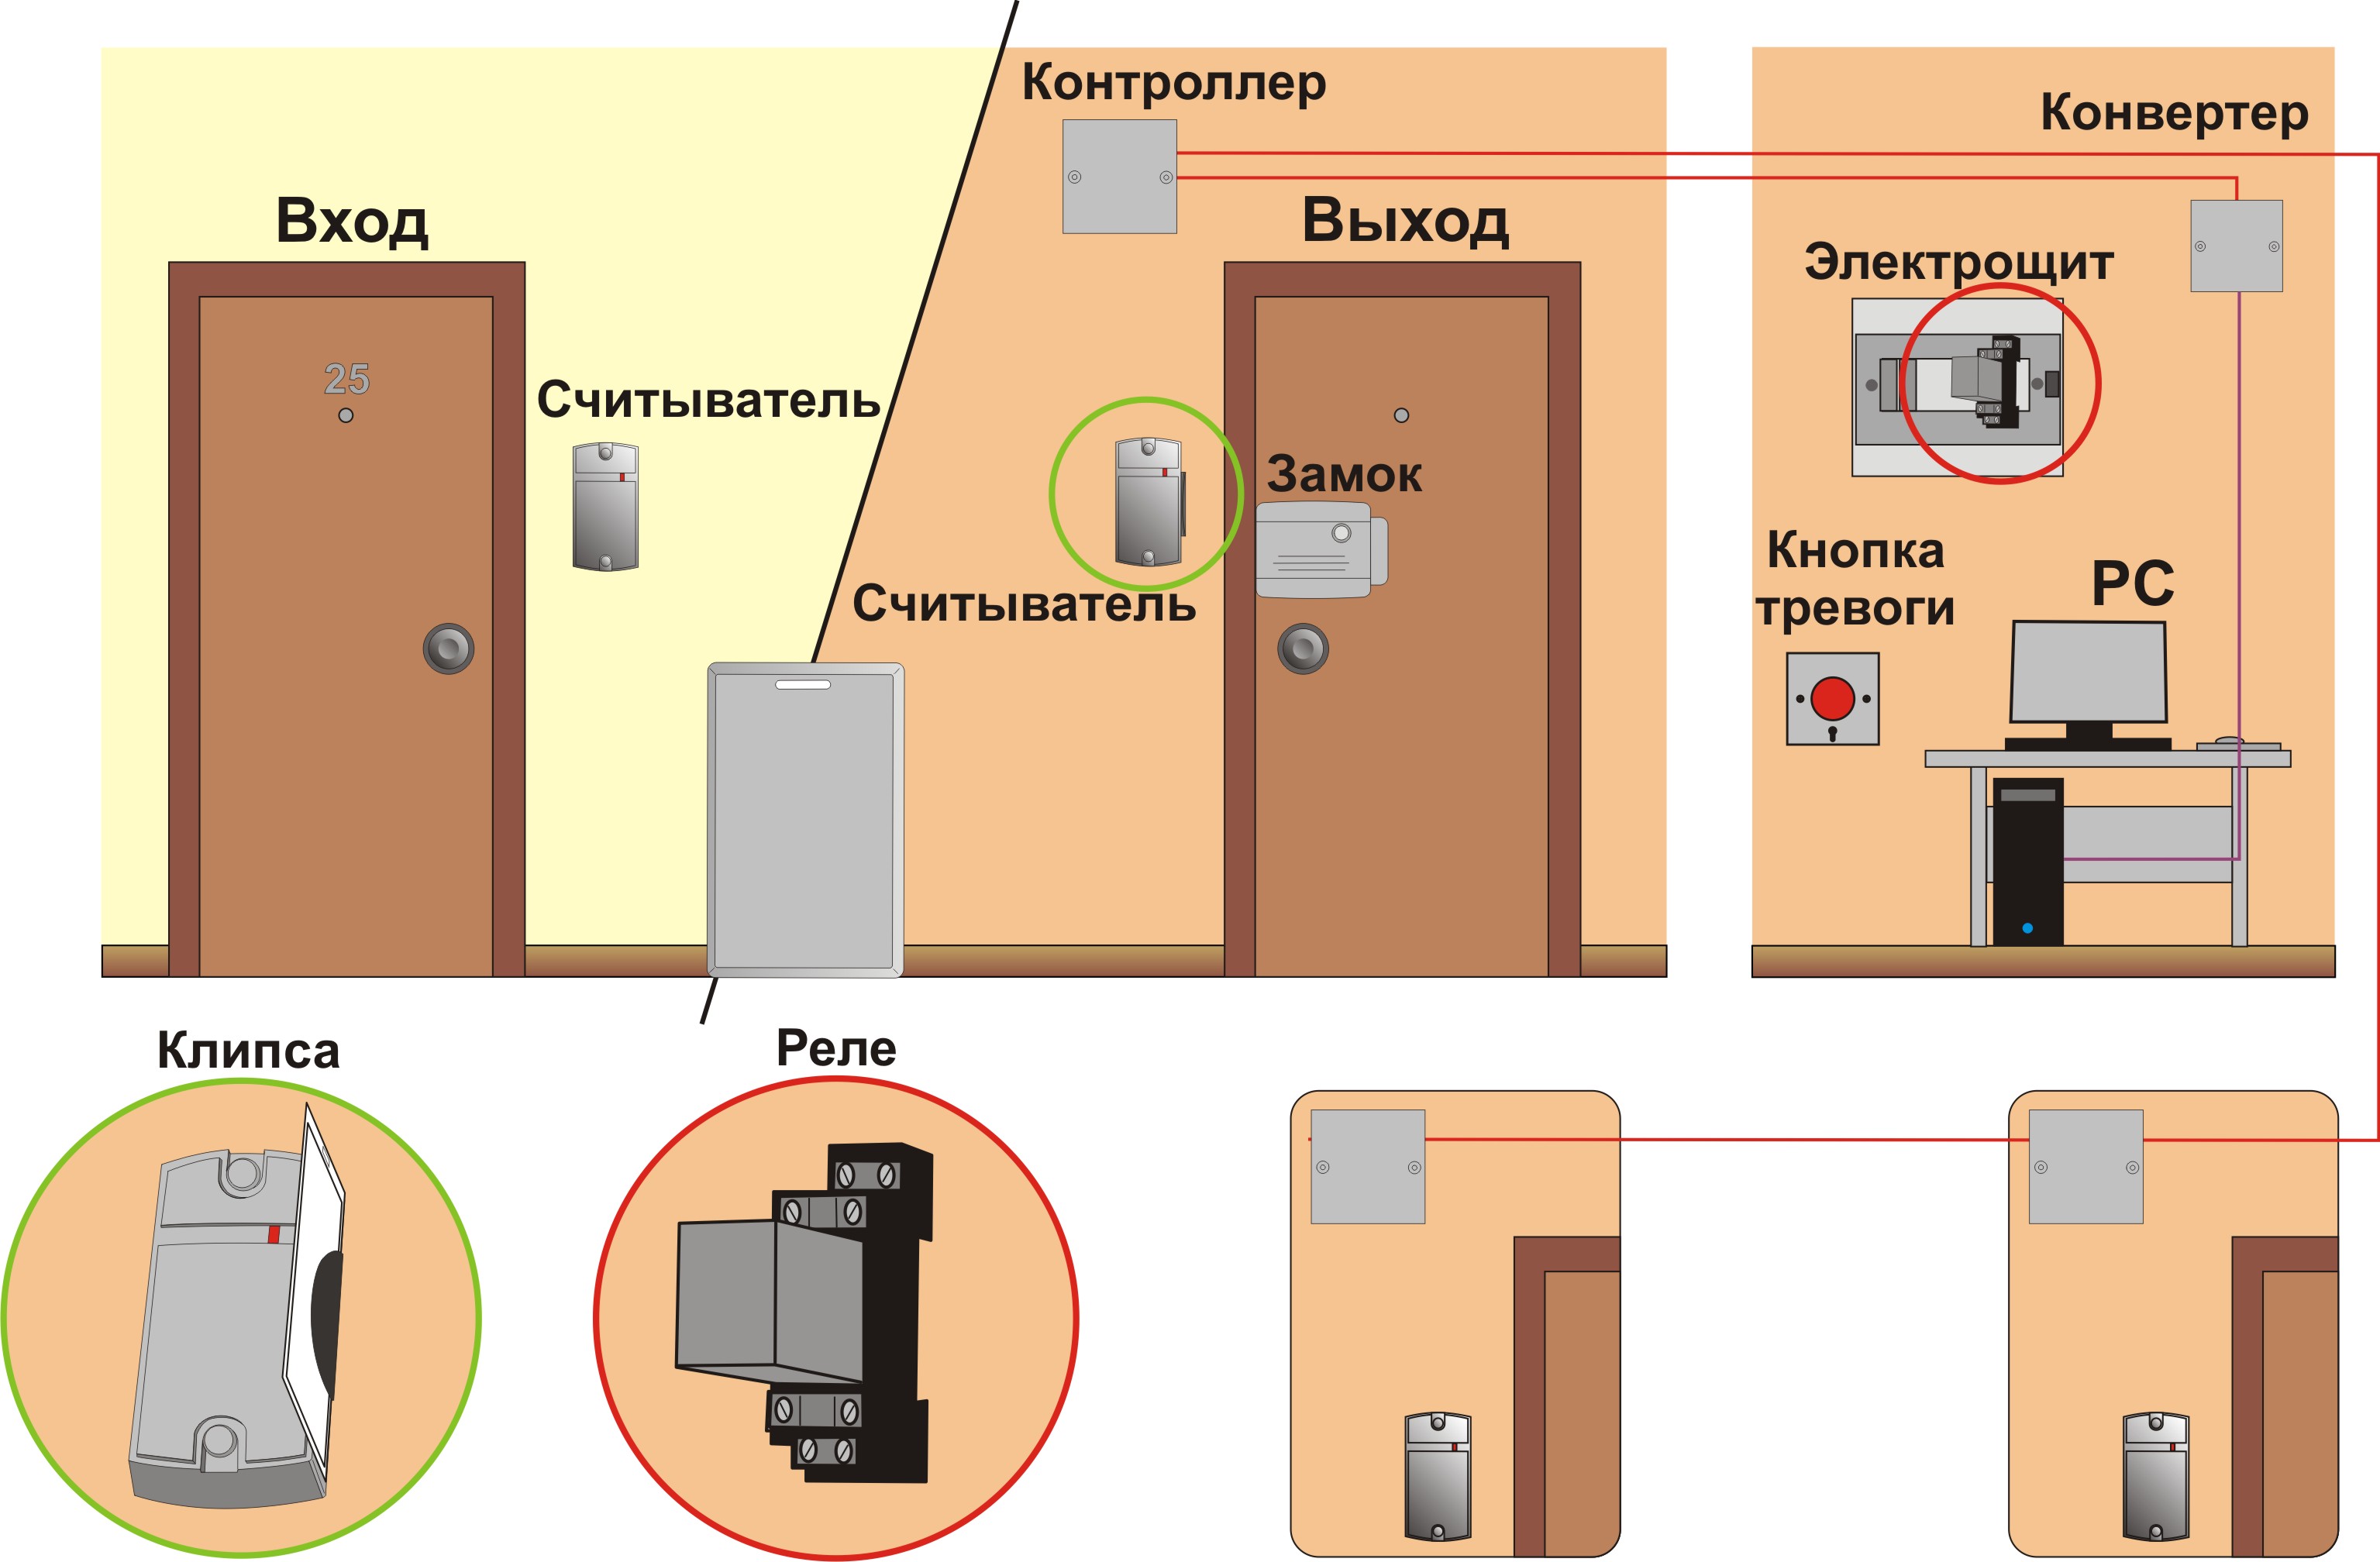 Схема функциональная: Сетевой контроль доступа
Для размещения внутри помещения.
Ведение лога событий
Для гостиниц